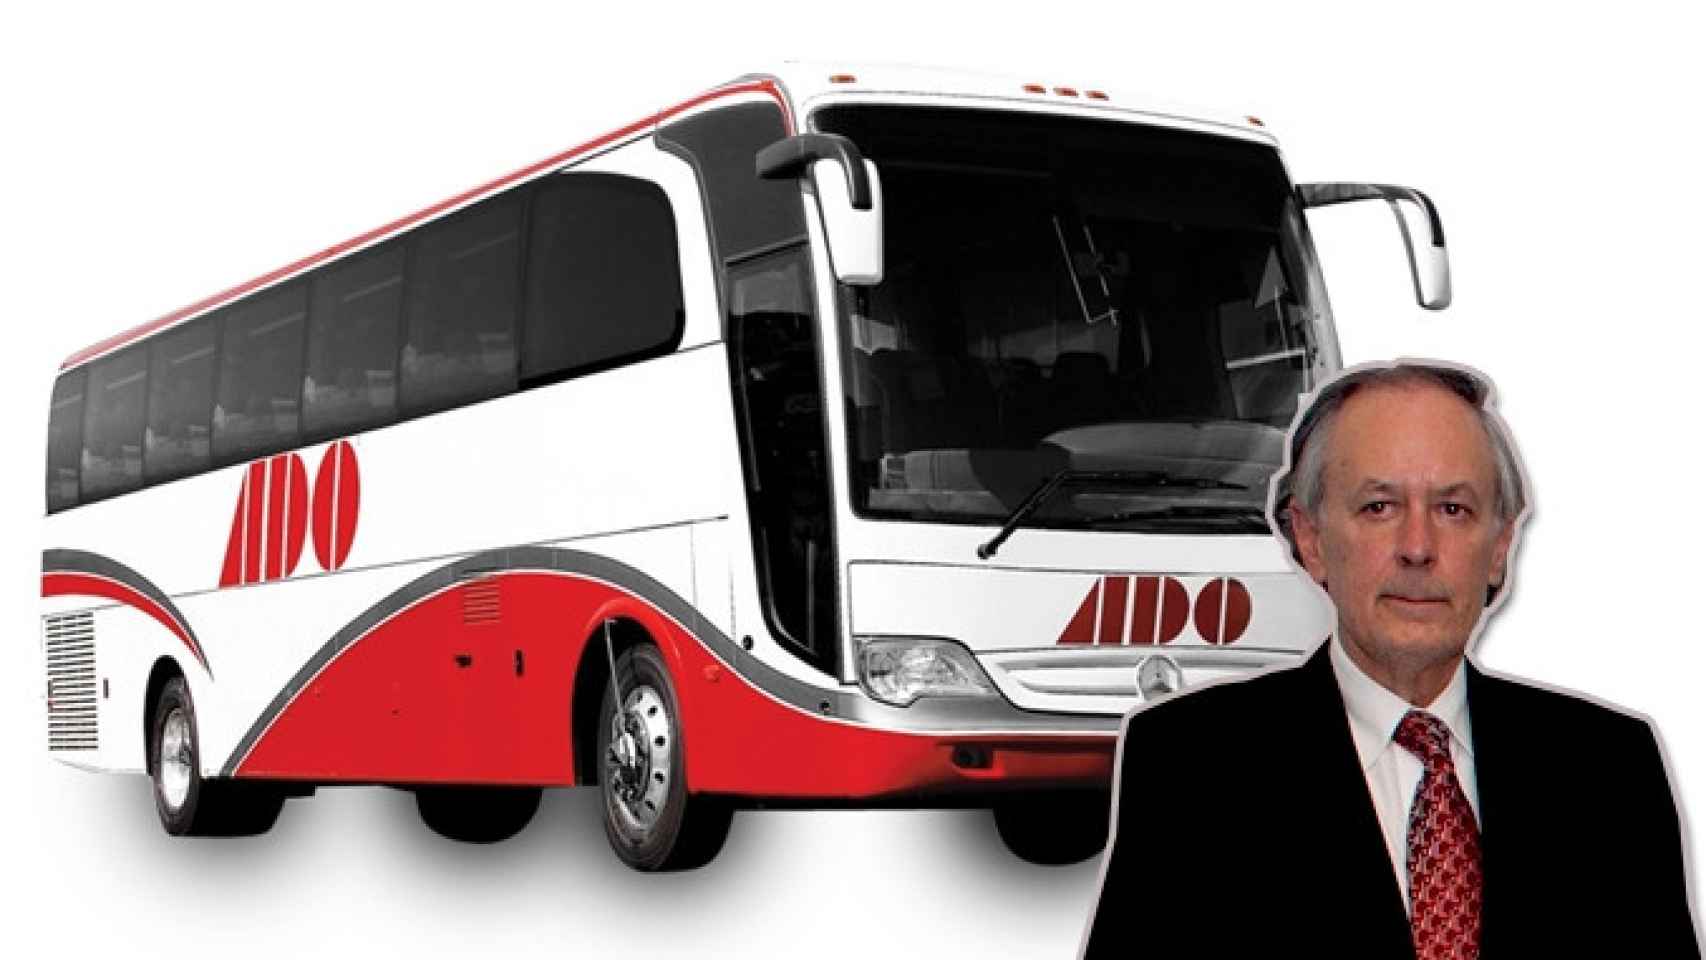 Juan Carlos Uriarte, el empresario mexicano que controla el grupo ADO y uno de los autobuses de la compañía / FOTOMONTAJE DE CG